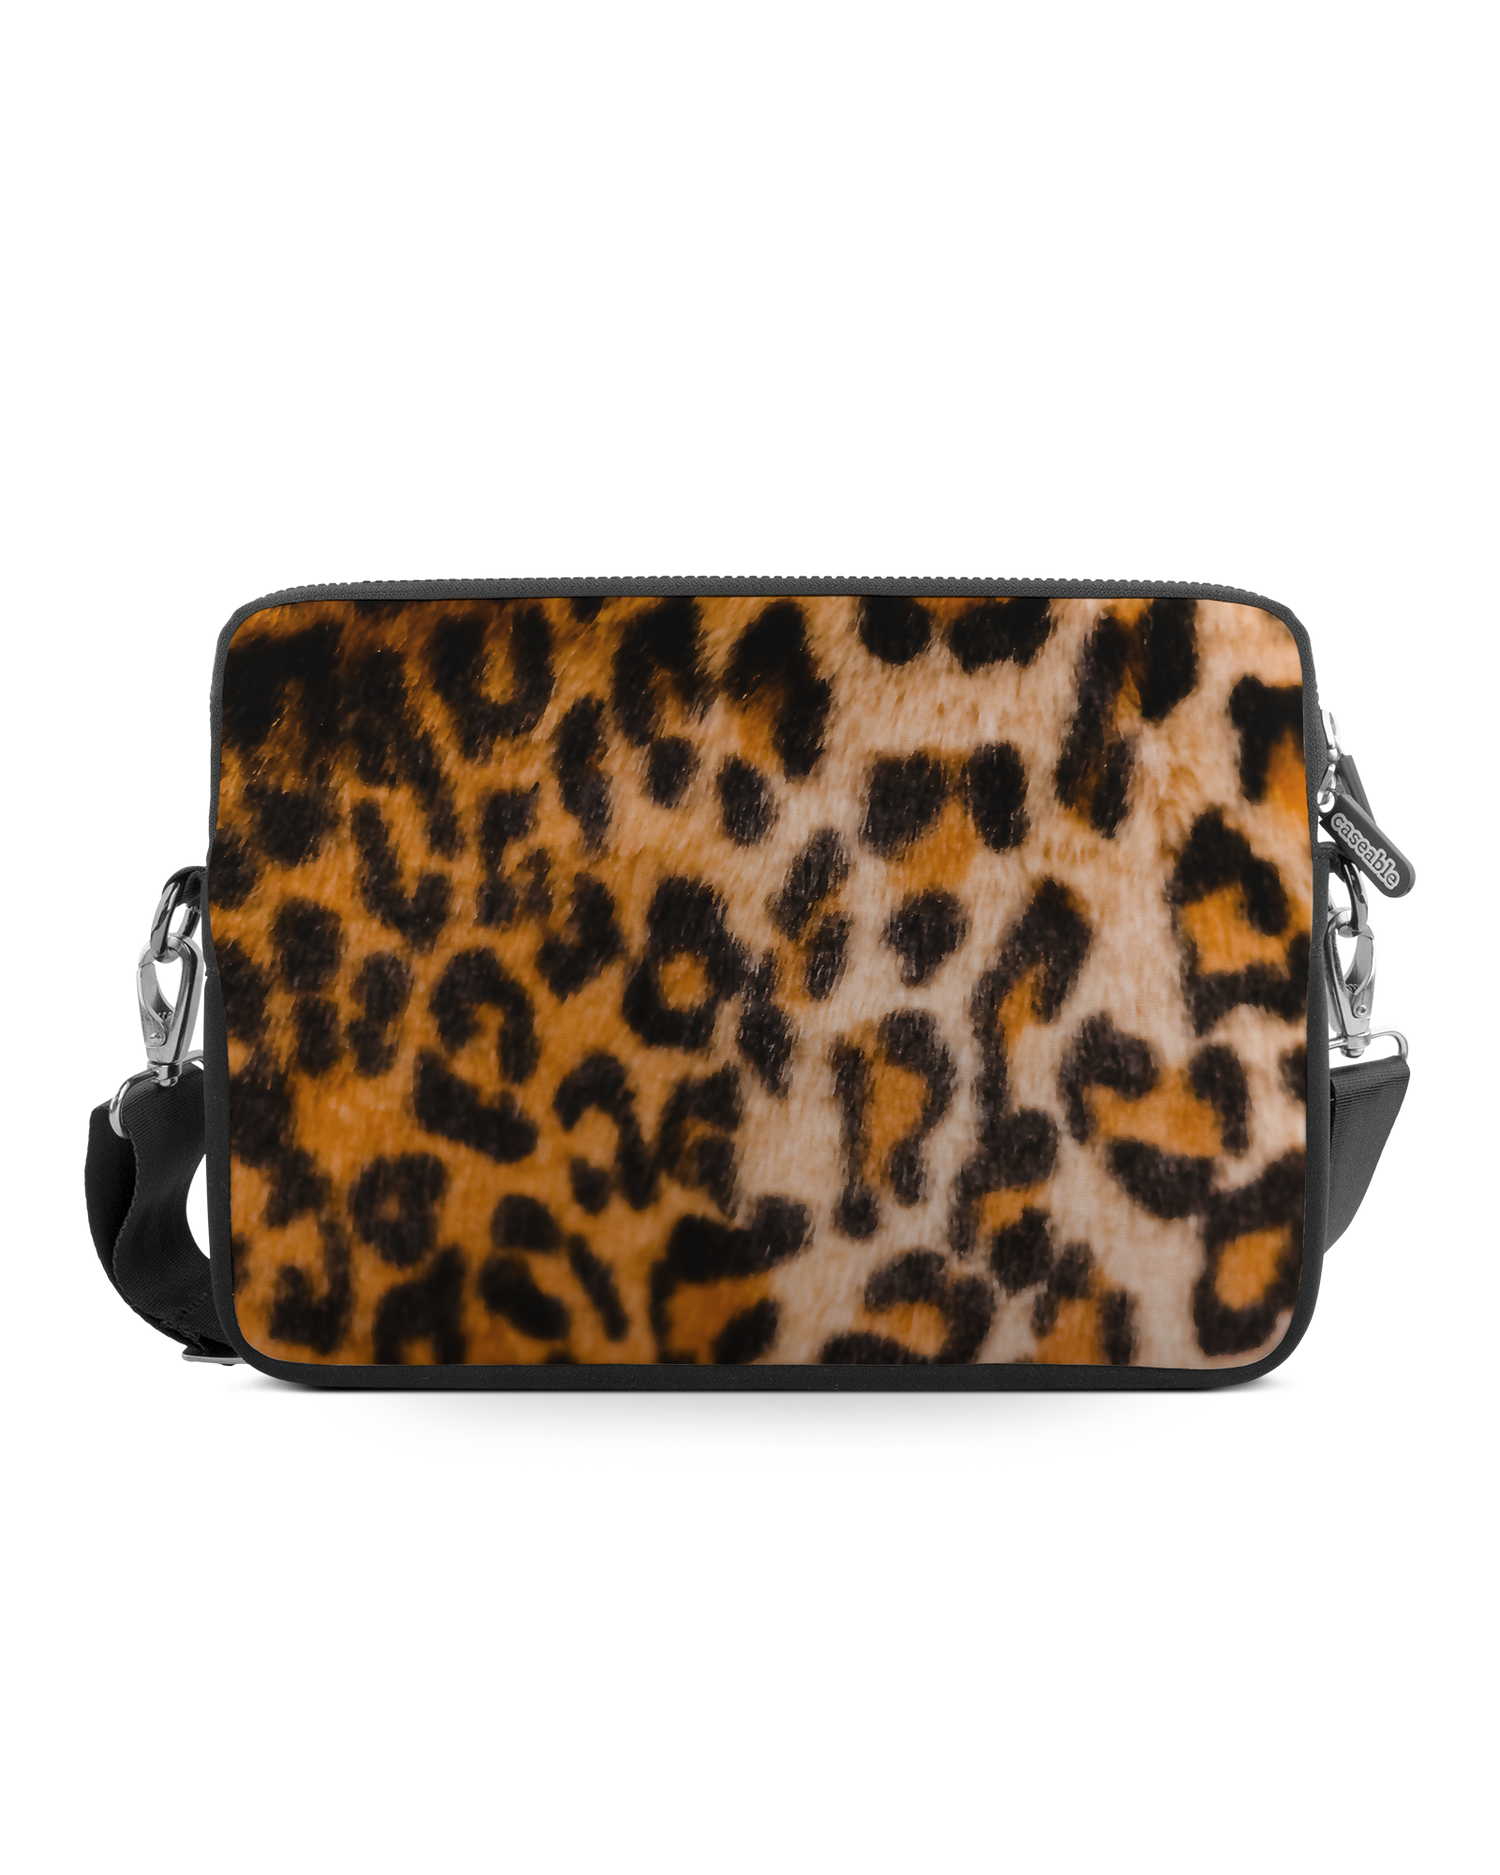 Leopard Pattern Premium Laptop Bag 13 inch: Front View